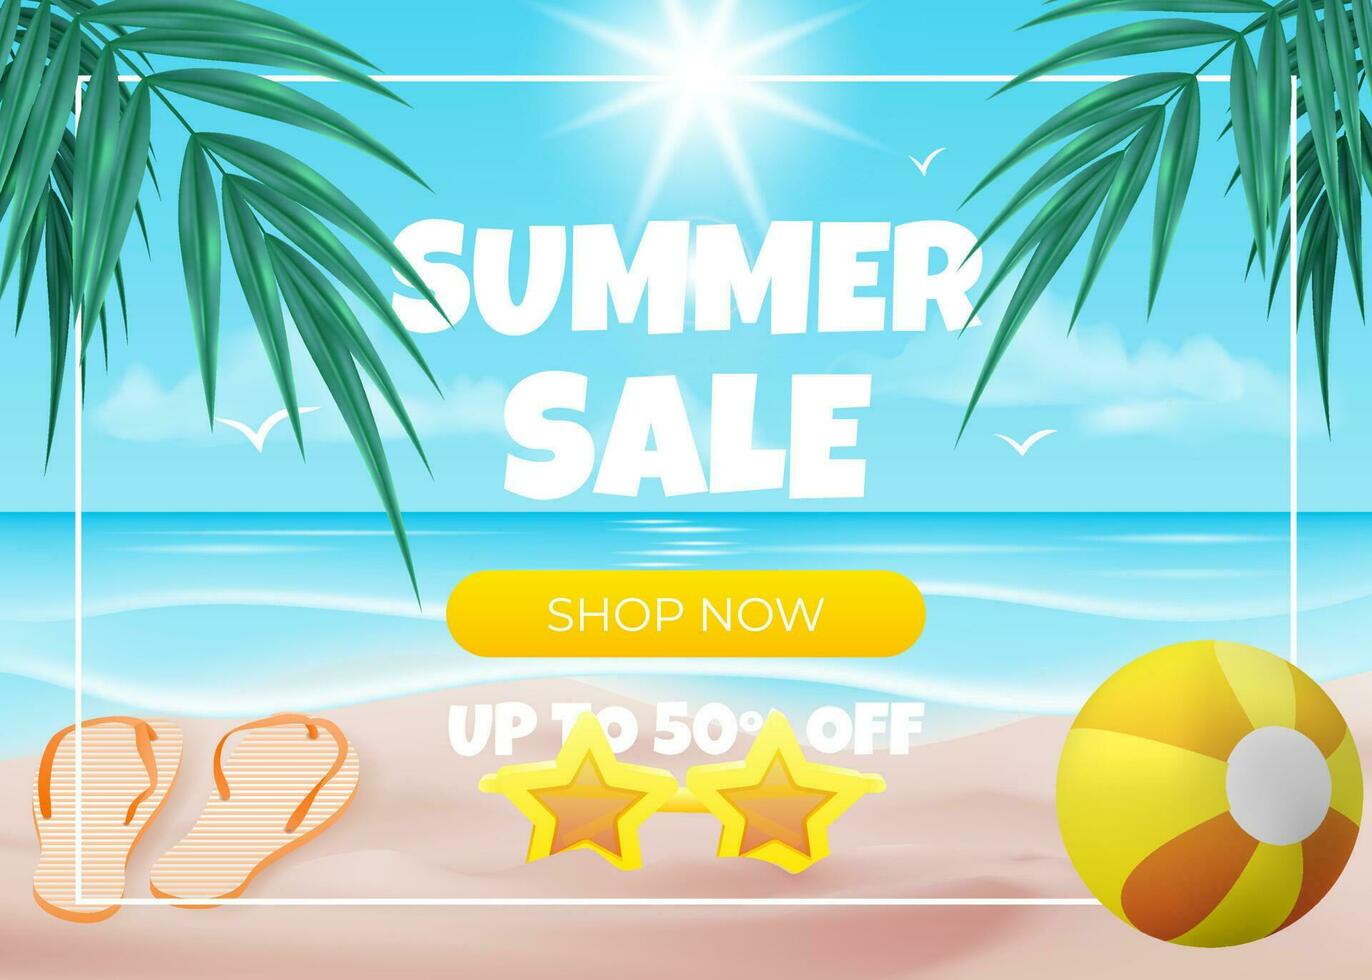 Blau Banner Vektor Illustration mit ein Palme Baum, Strand Ball, Sonnenbrille, und Sonne mit ein Gelb Geschäft jetzt Verkauf Angebot Taste auf ein Weiß Rahmen gegen ein Ozean Blau Hintergrund. zum Werbung